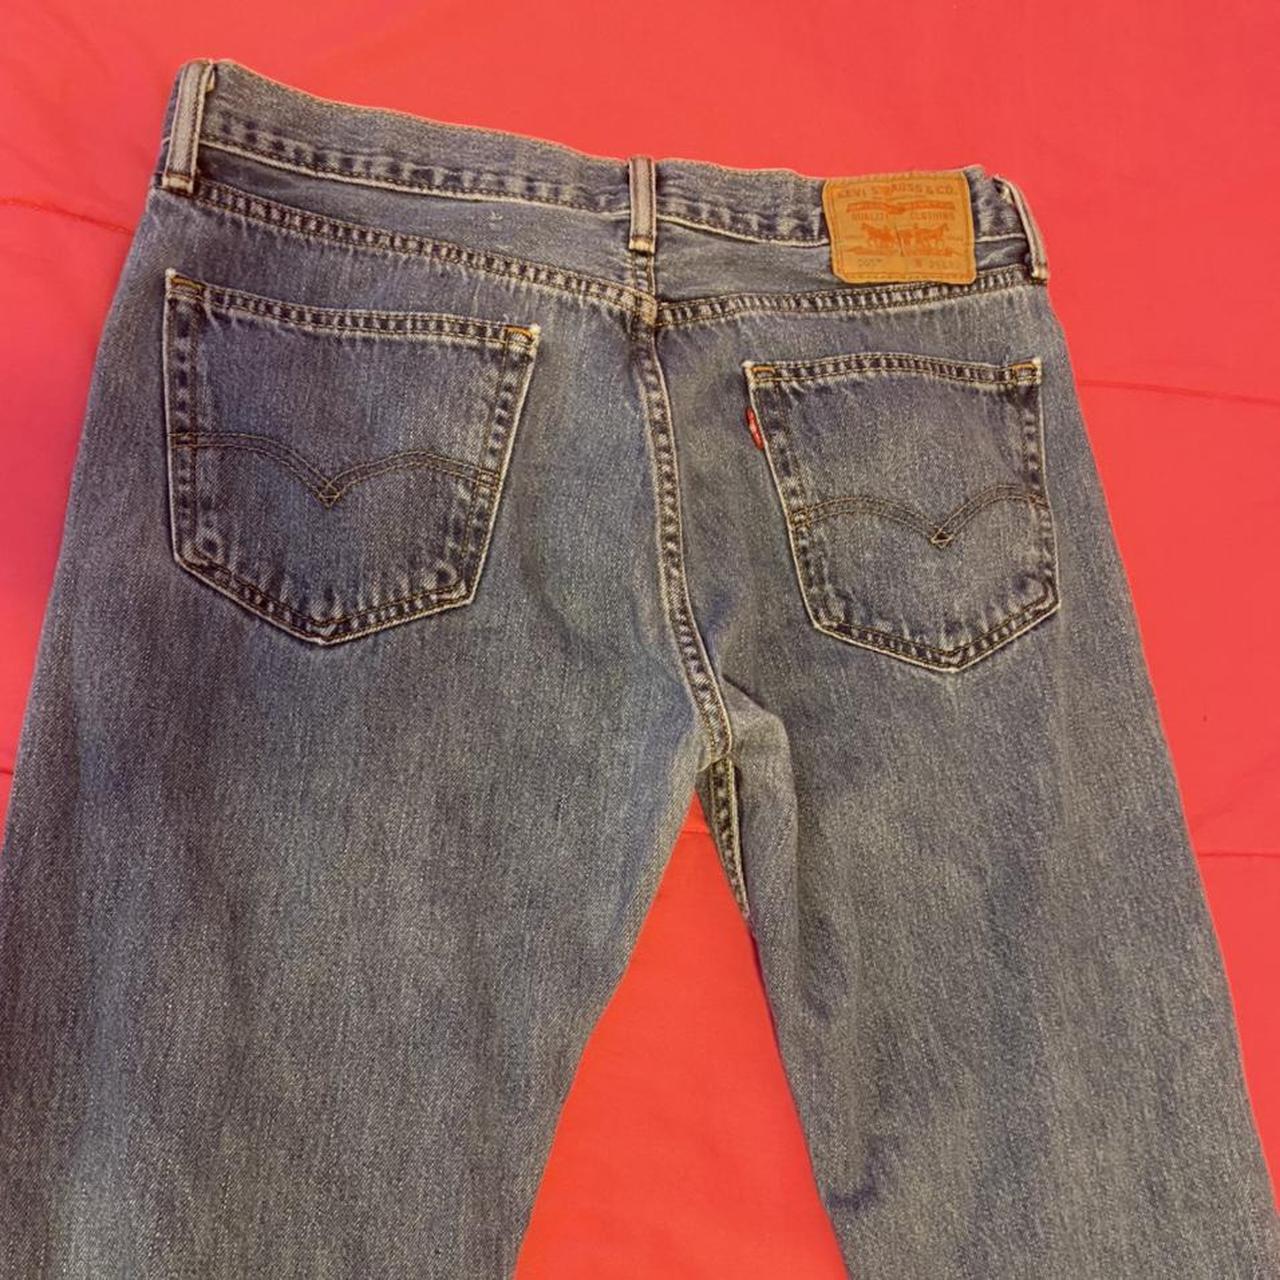 Levis 505 jeans. Vintage Levi’s jeans with boyfriend... - Depop